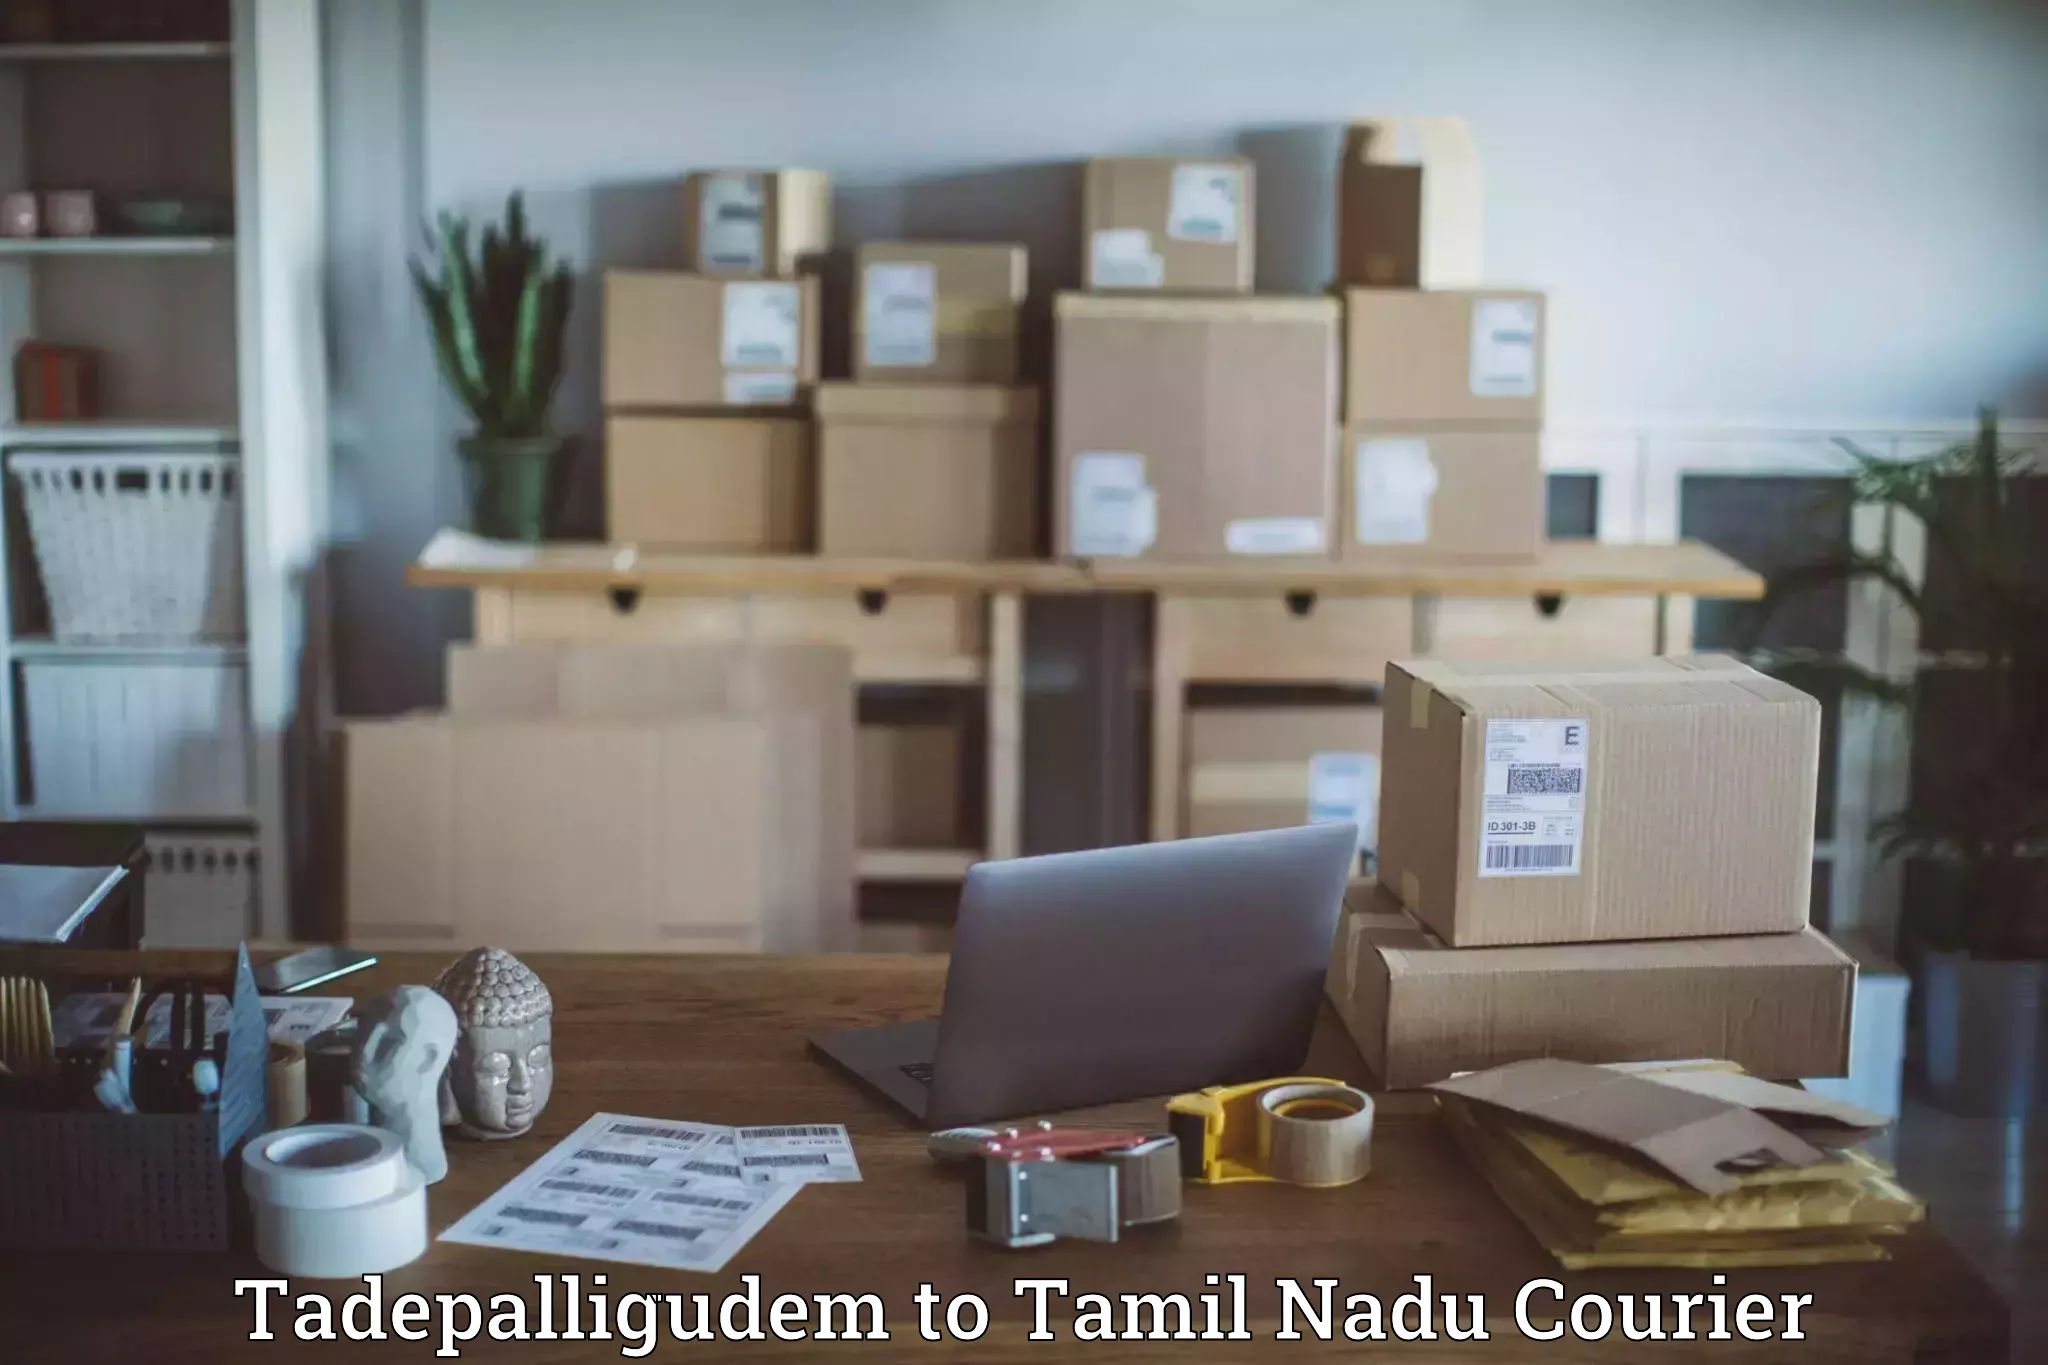 Modern courier technology Tadepalligudem to Tamil Nadu